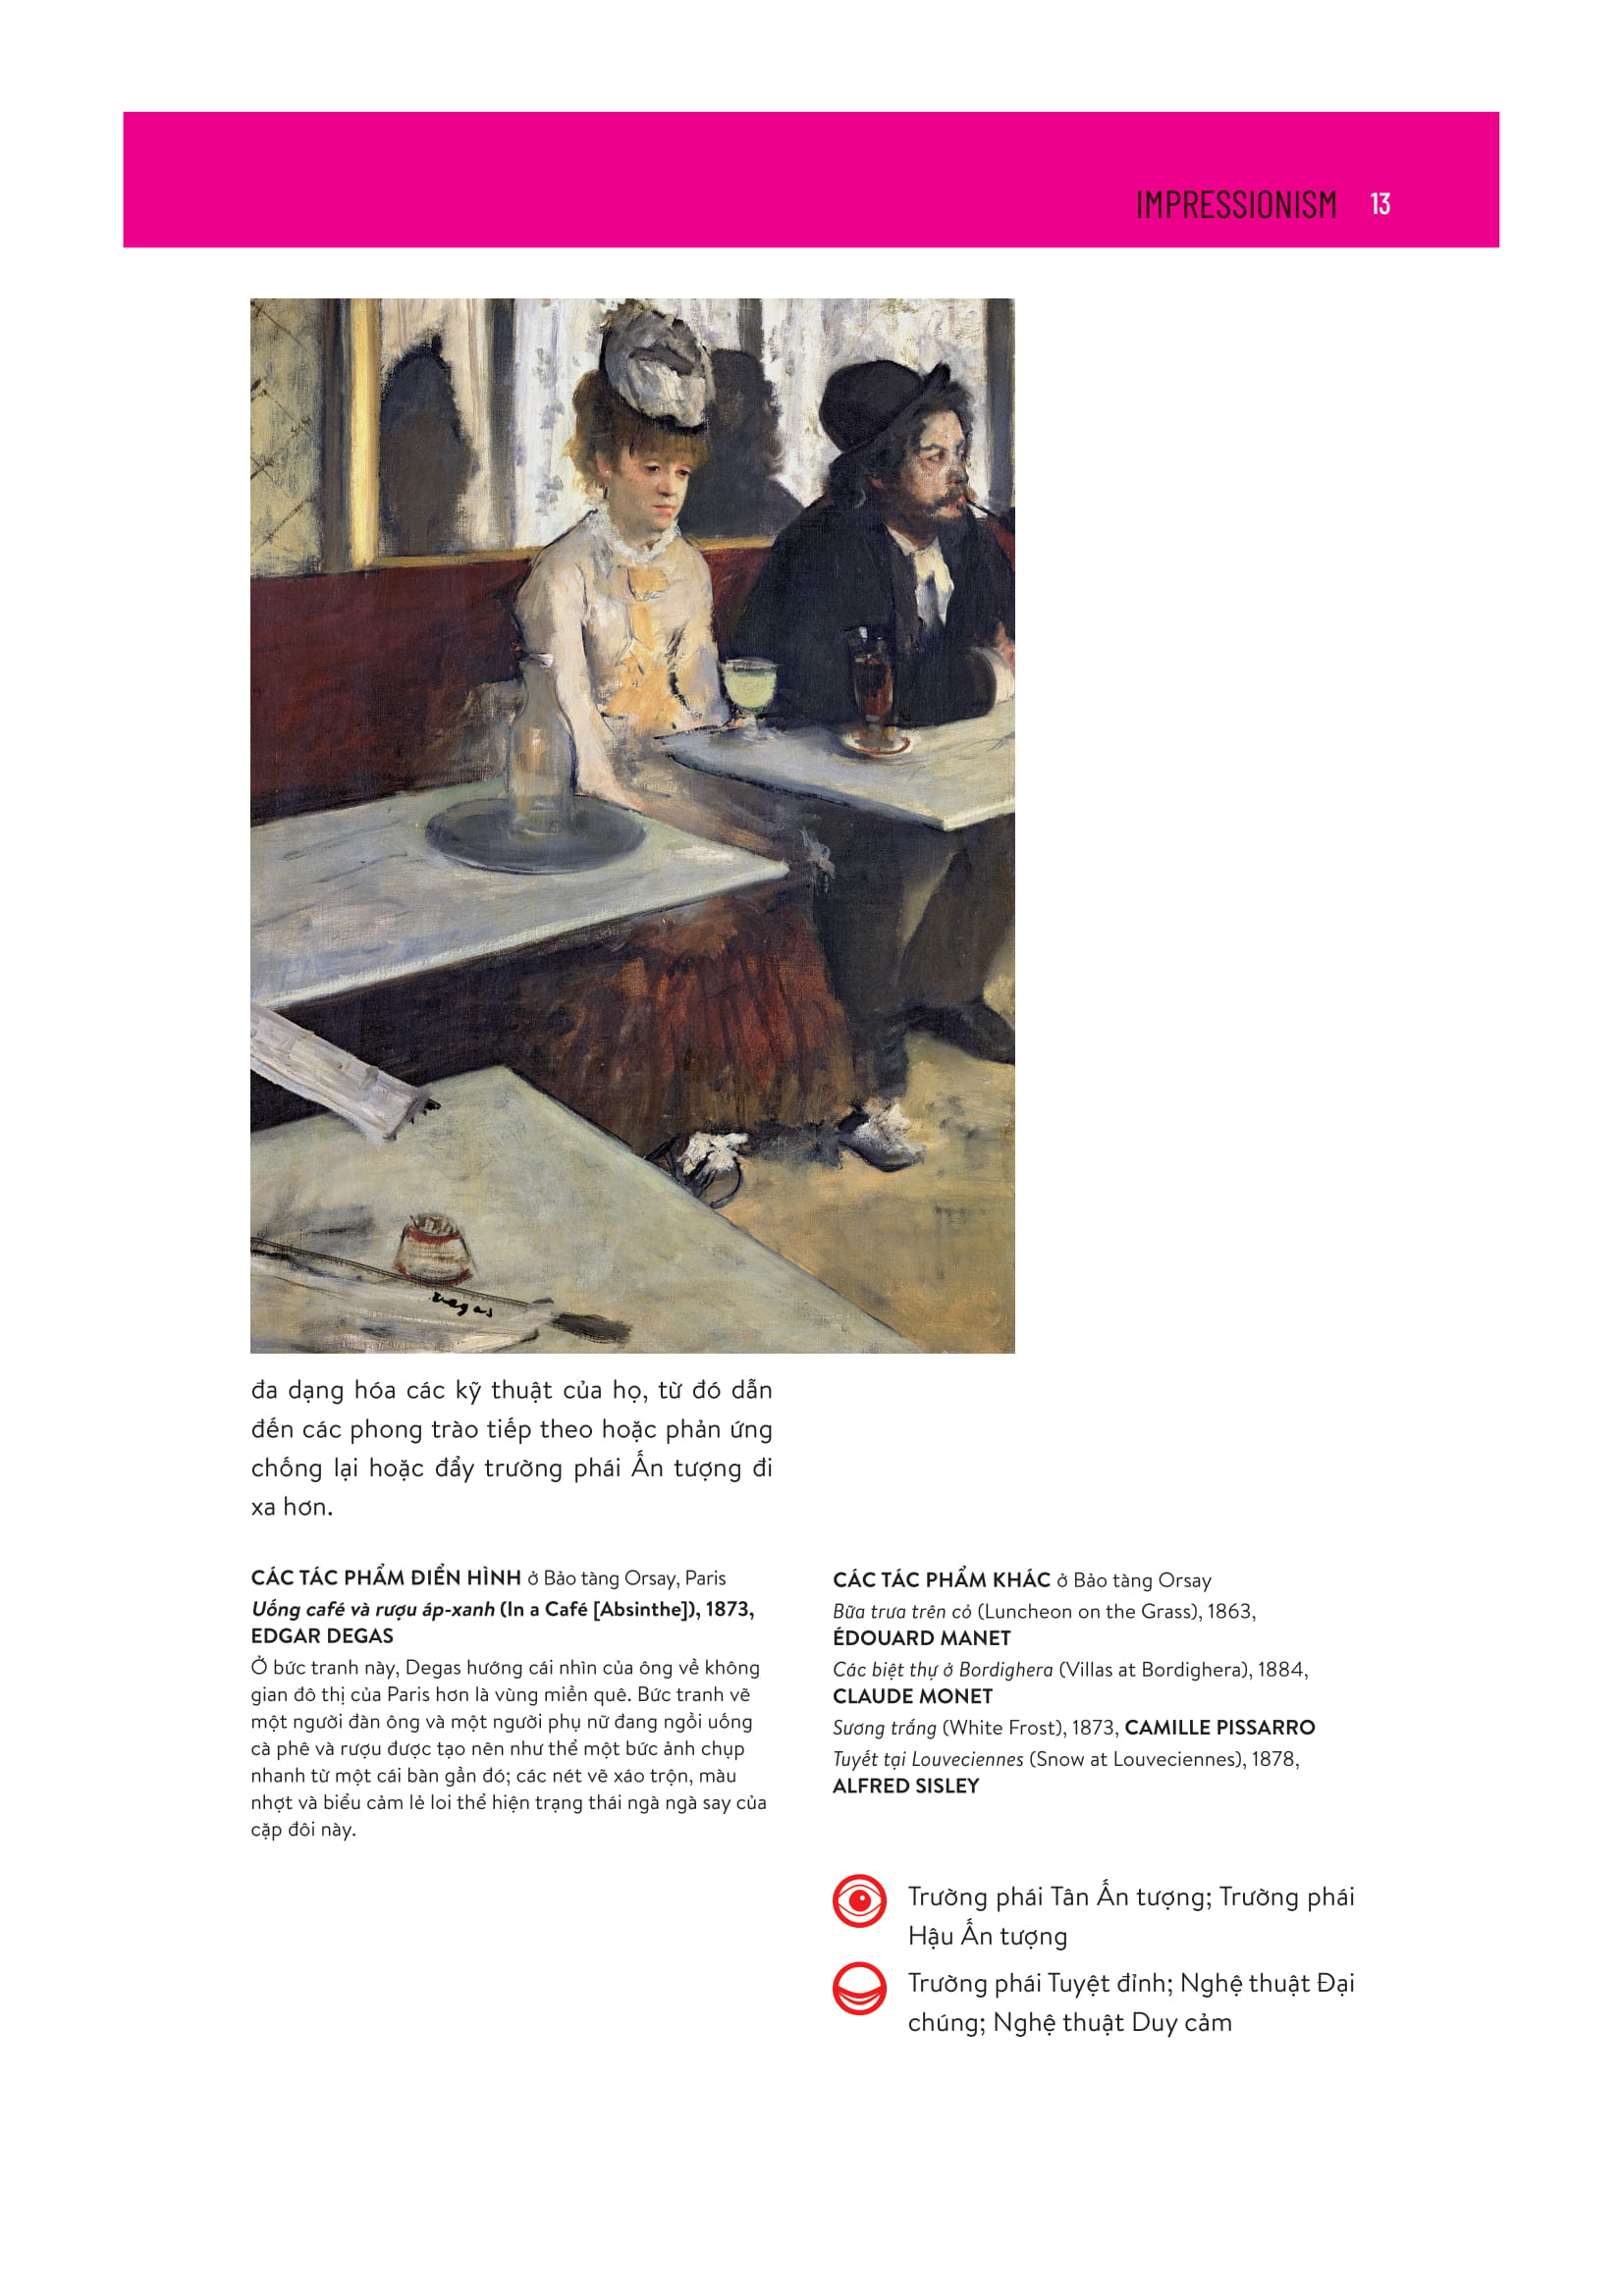 ISMS - Hiểu Về Nghệ Thuật Hiện Đại Bìa Cứng PDF